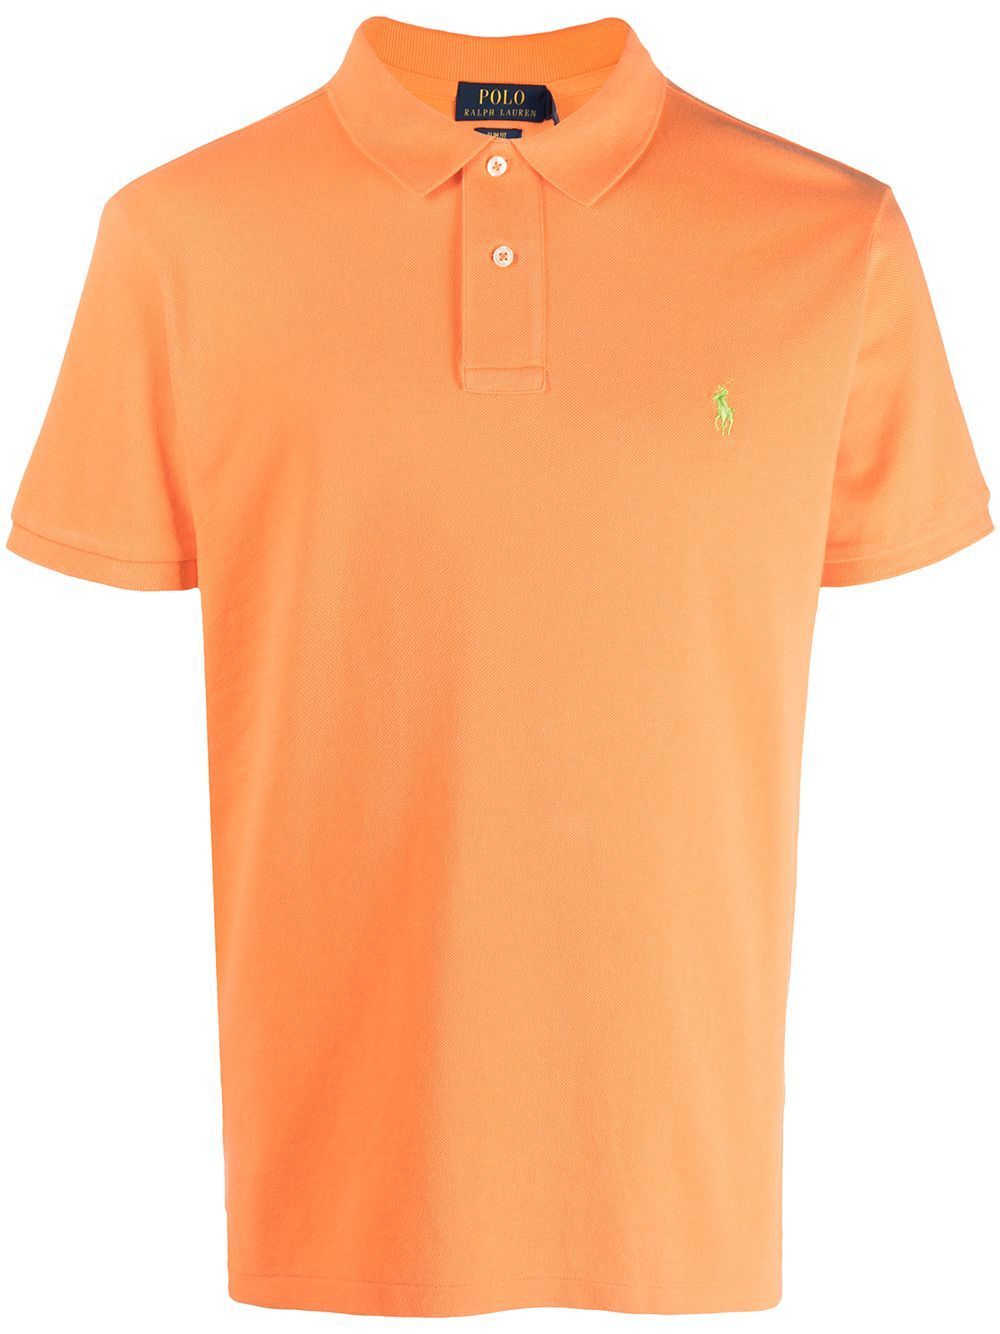 Polo Ralph Lauren ajusté orange en coton pour homme I Georgespaul